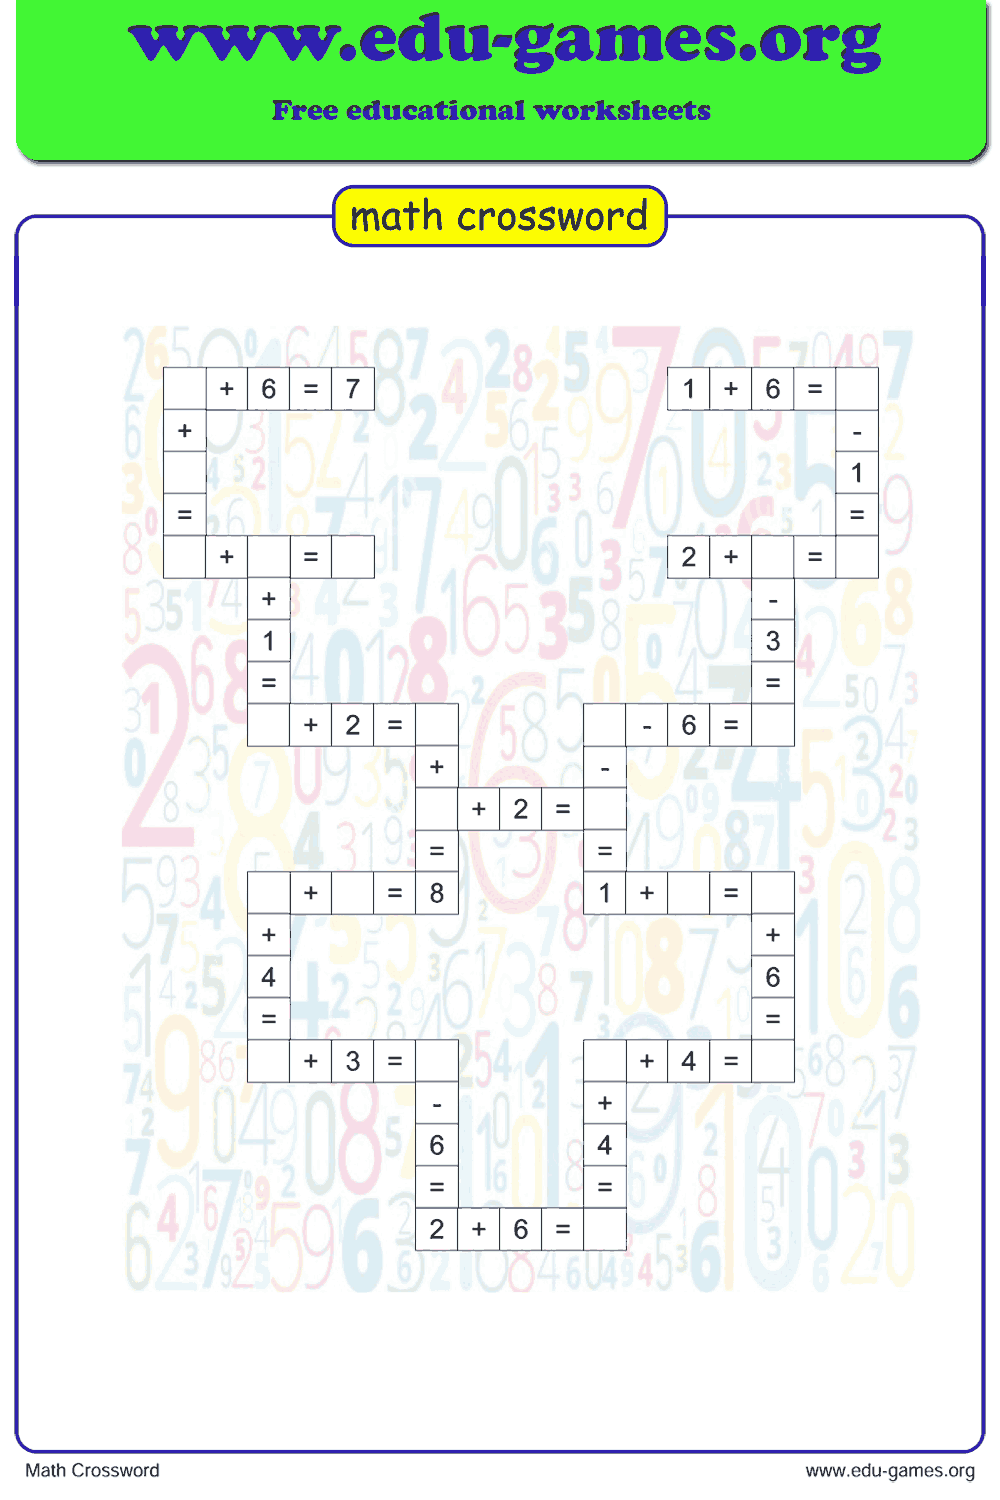 Crossword Puzzle Elementary Printable Free